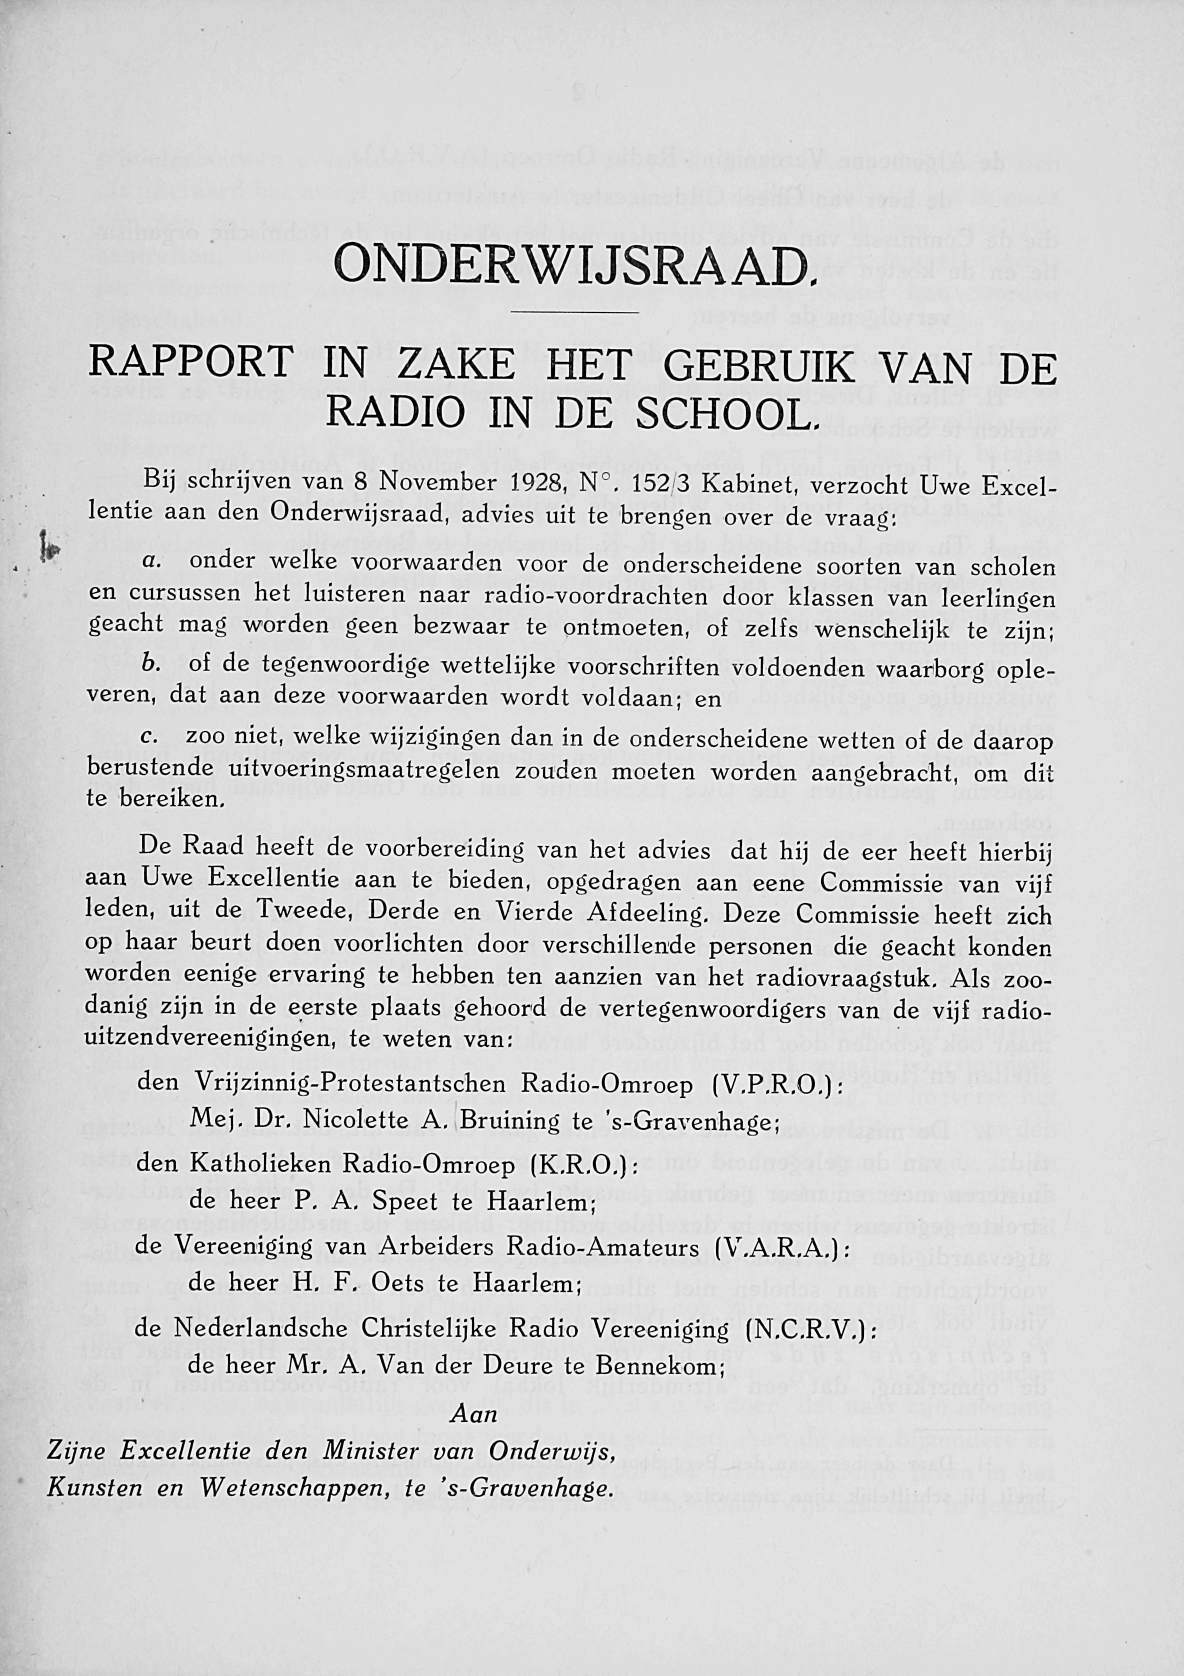 ONDERWIJSRAAD. RAPPORT IN ZAKE HET GEBRUIK VAN DE RADIO IN DE SCHOOL. Bij schrijven van 8 November 1928, N.